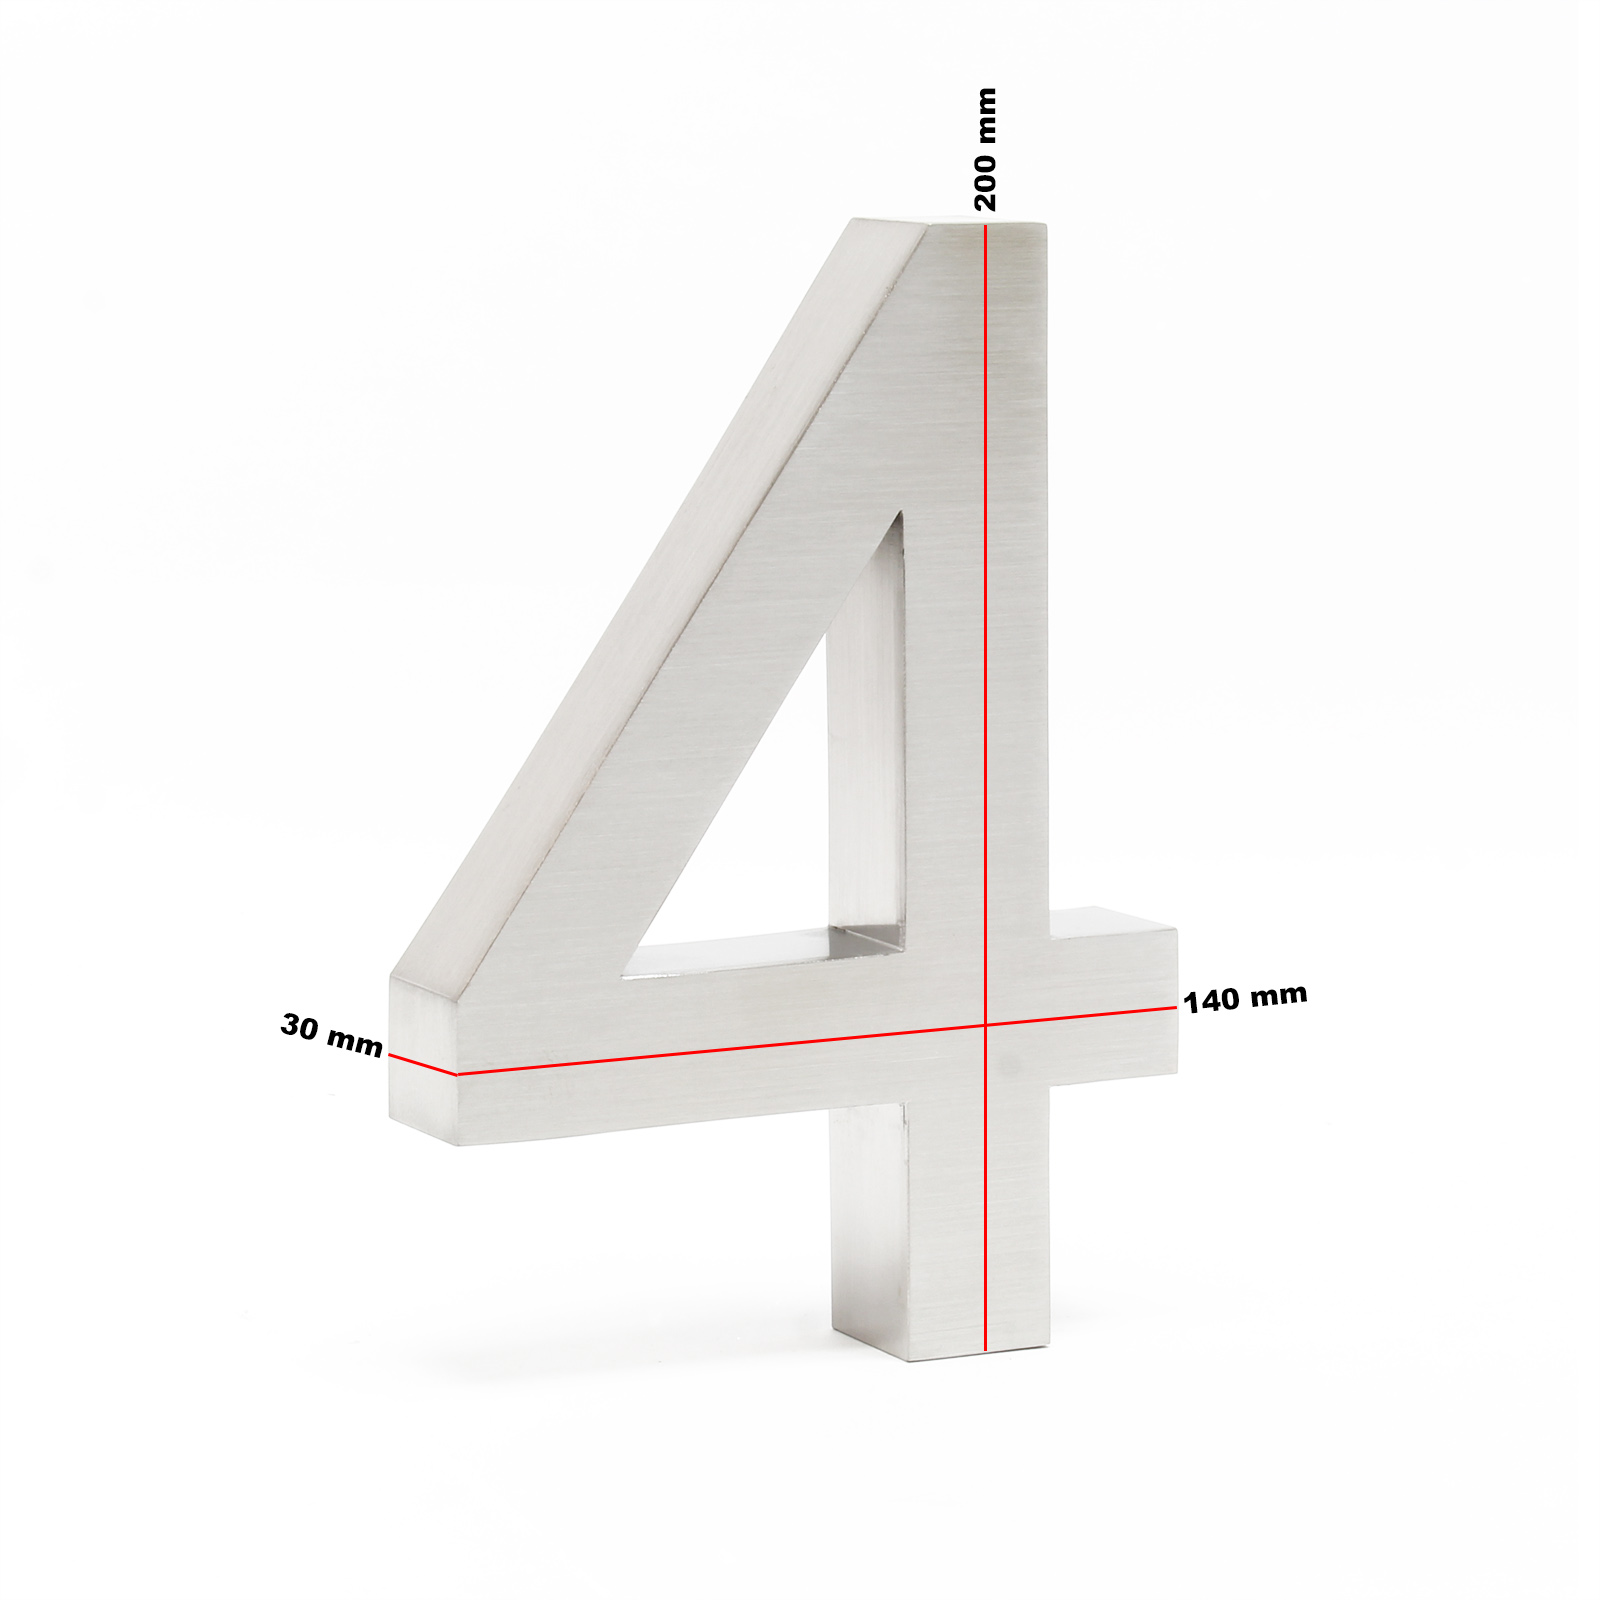 WilTec Plaque Numéro Maison Chiffre 3 3D 20cm Acier Inoxydable Résistant Intempéries Matériel Fixation 